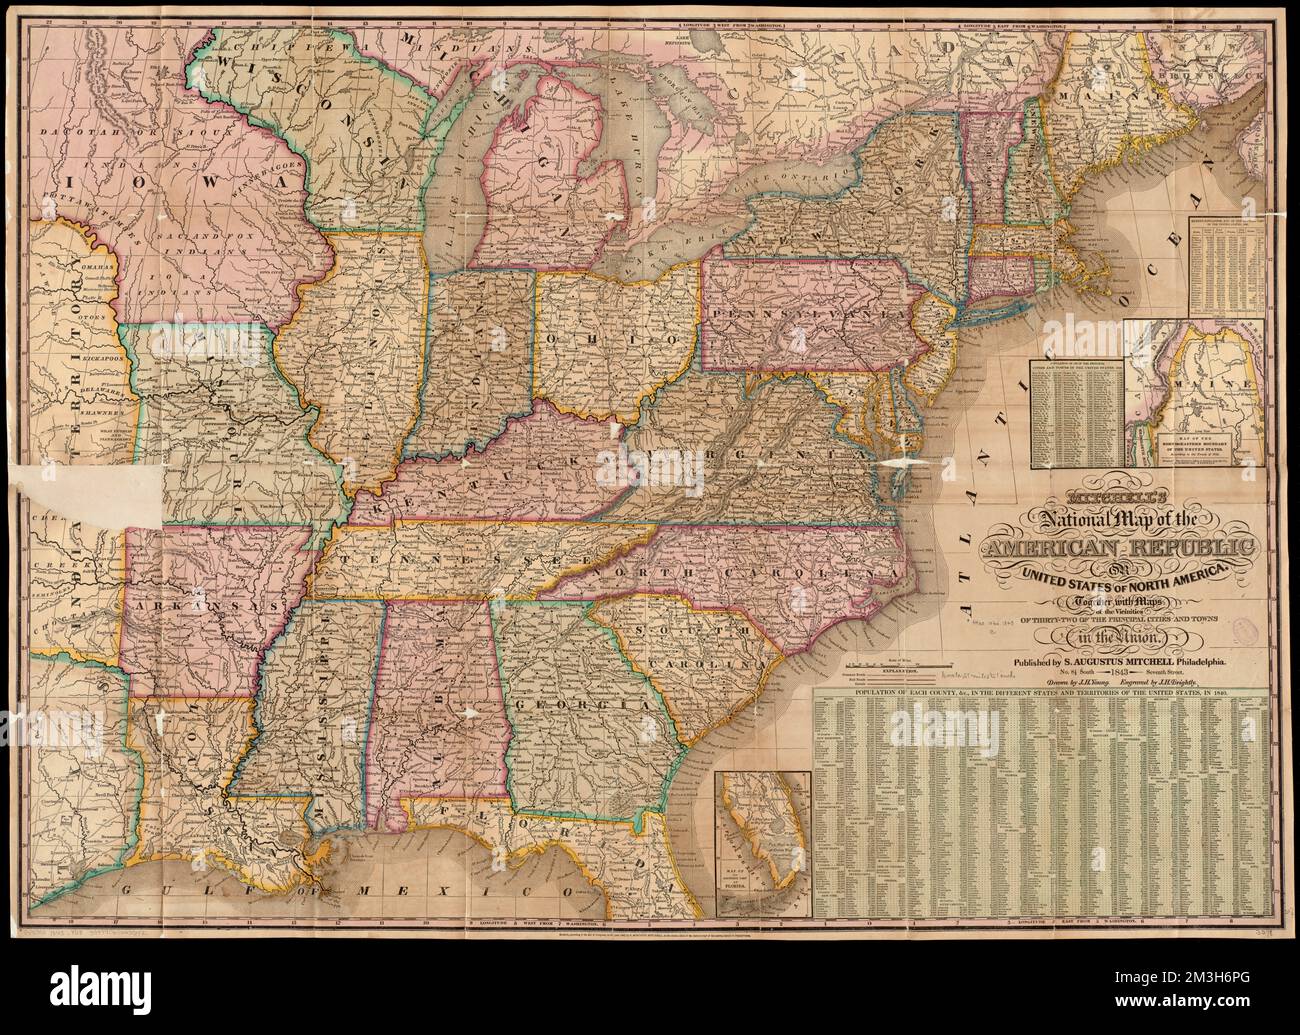 Mitchells nationale Karte der Amerikanischen Republik oder der Vereinigten Staaten von Nordamerika : zusammen mit Karten der Umgebung von 32 der wichtigsten Städte und Gemeinden der Union , Vereinigte Staaten, Maps Norman B. Leventhal Map Center Collection Stockfoto